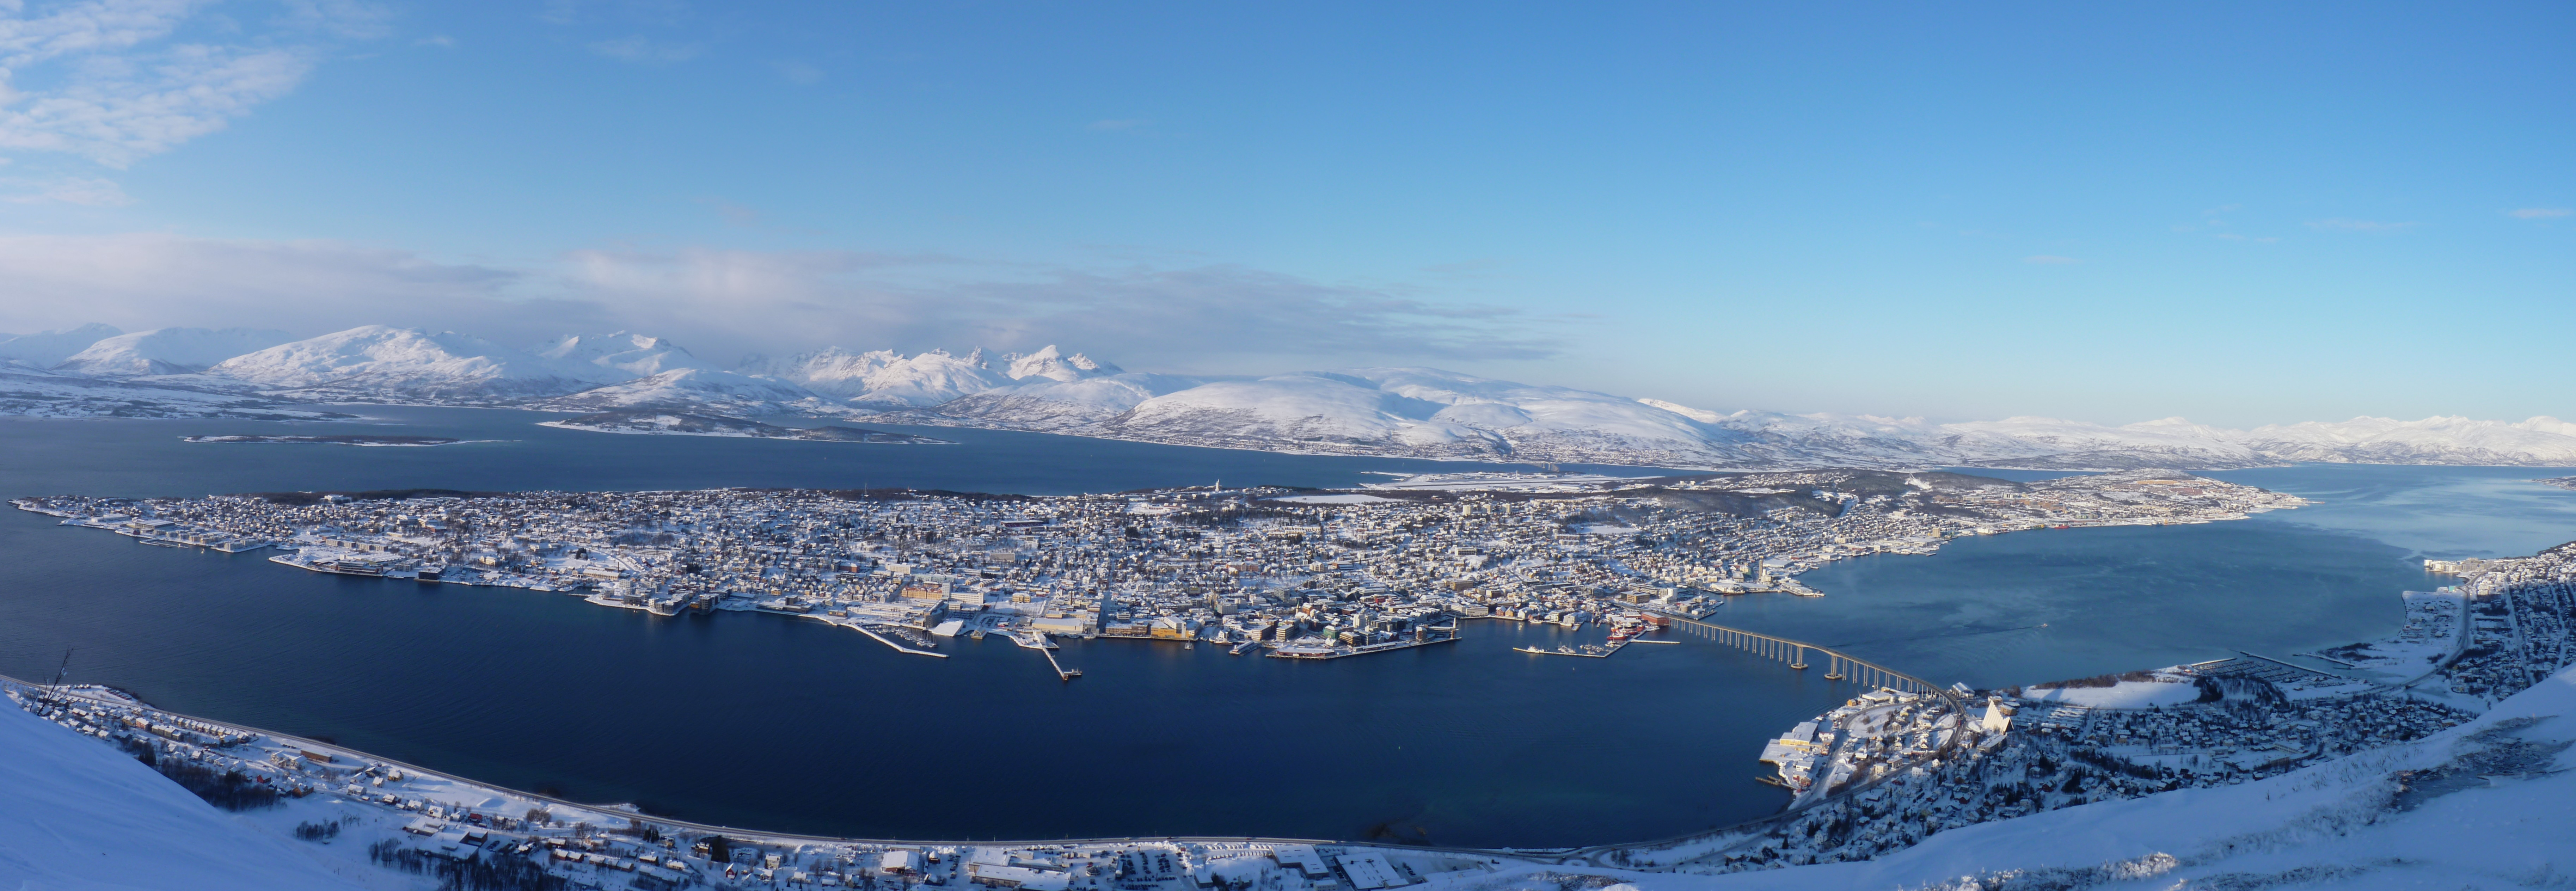 Ile de Tromsø - Norvège 1008230354491159516615775